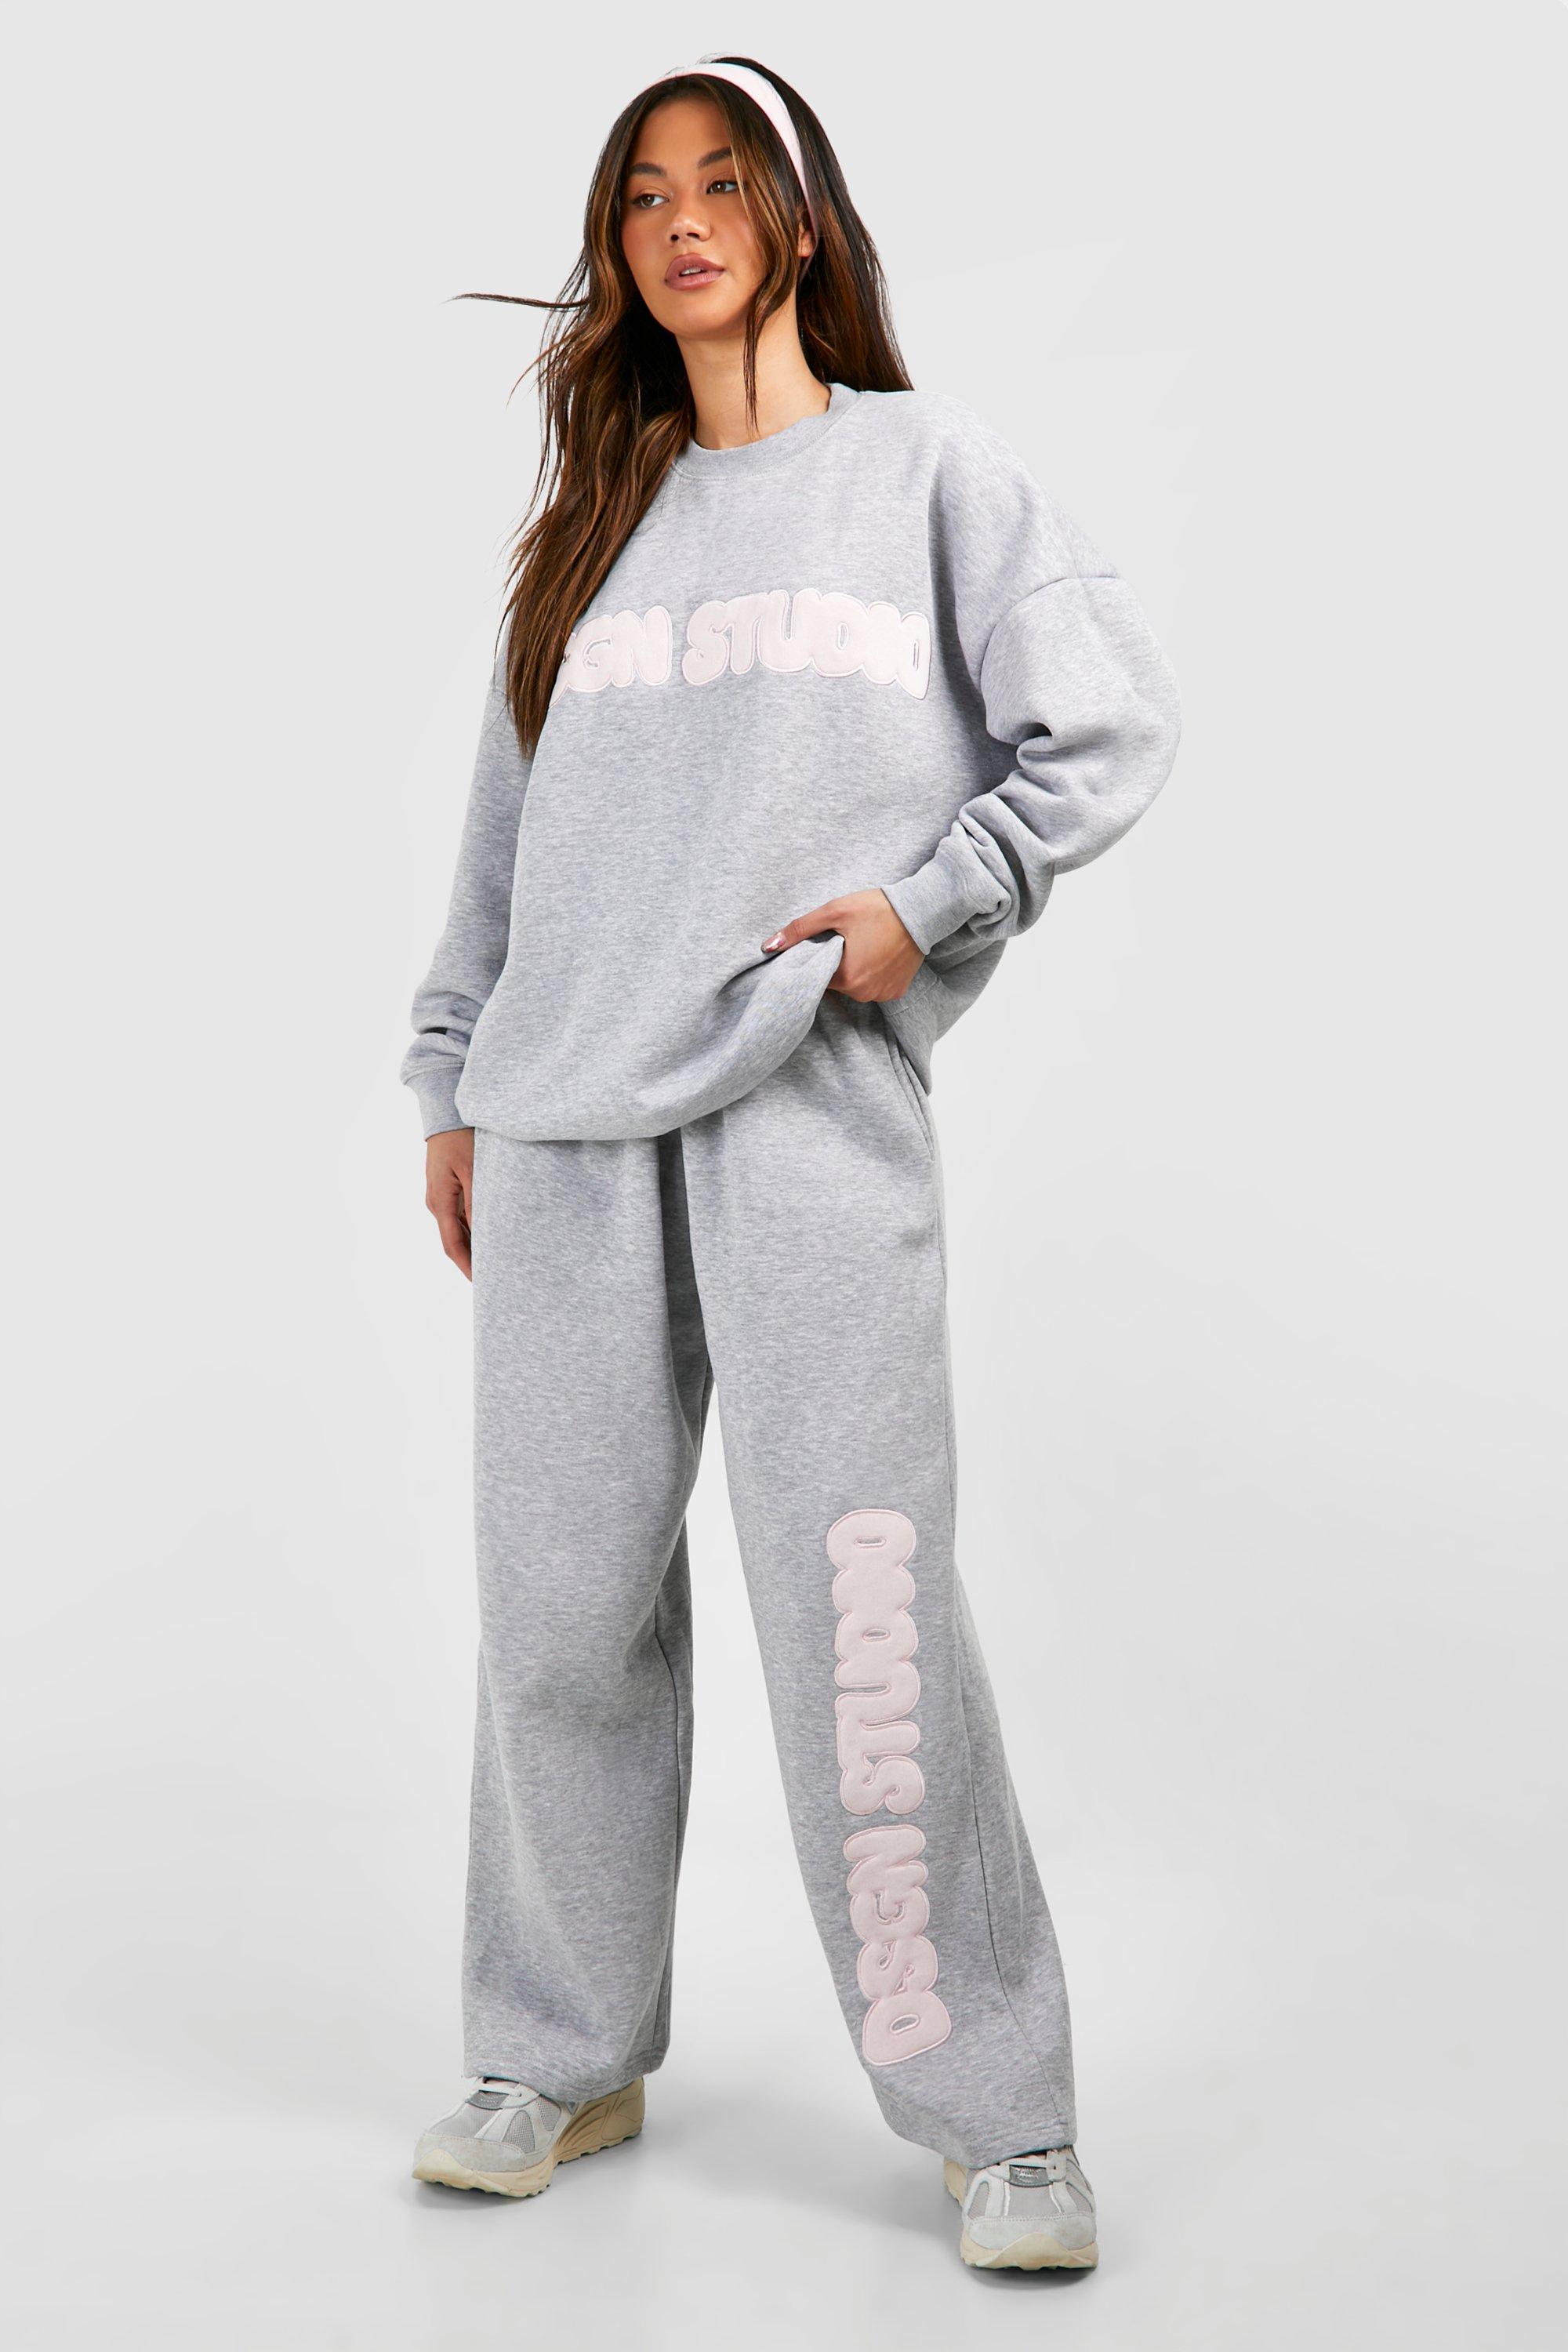 Dsgn Studio Applique Oversized Sweatshirt For Women-Bho-2381-Grey